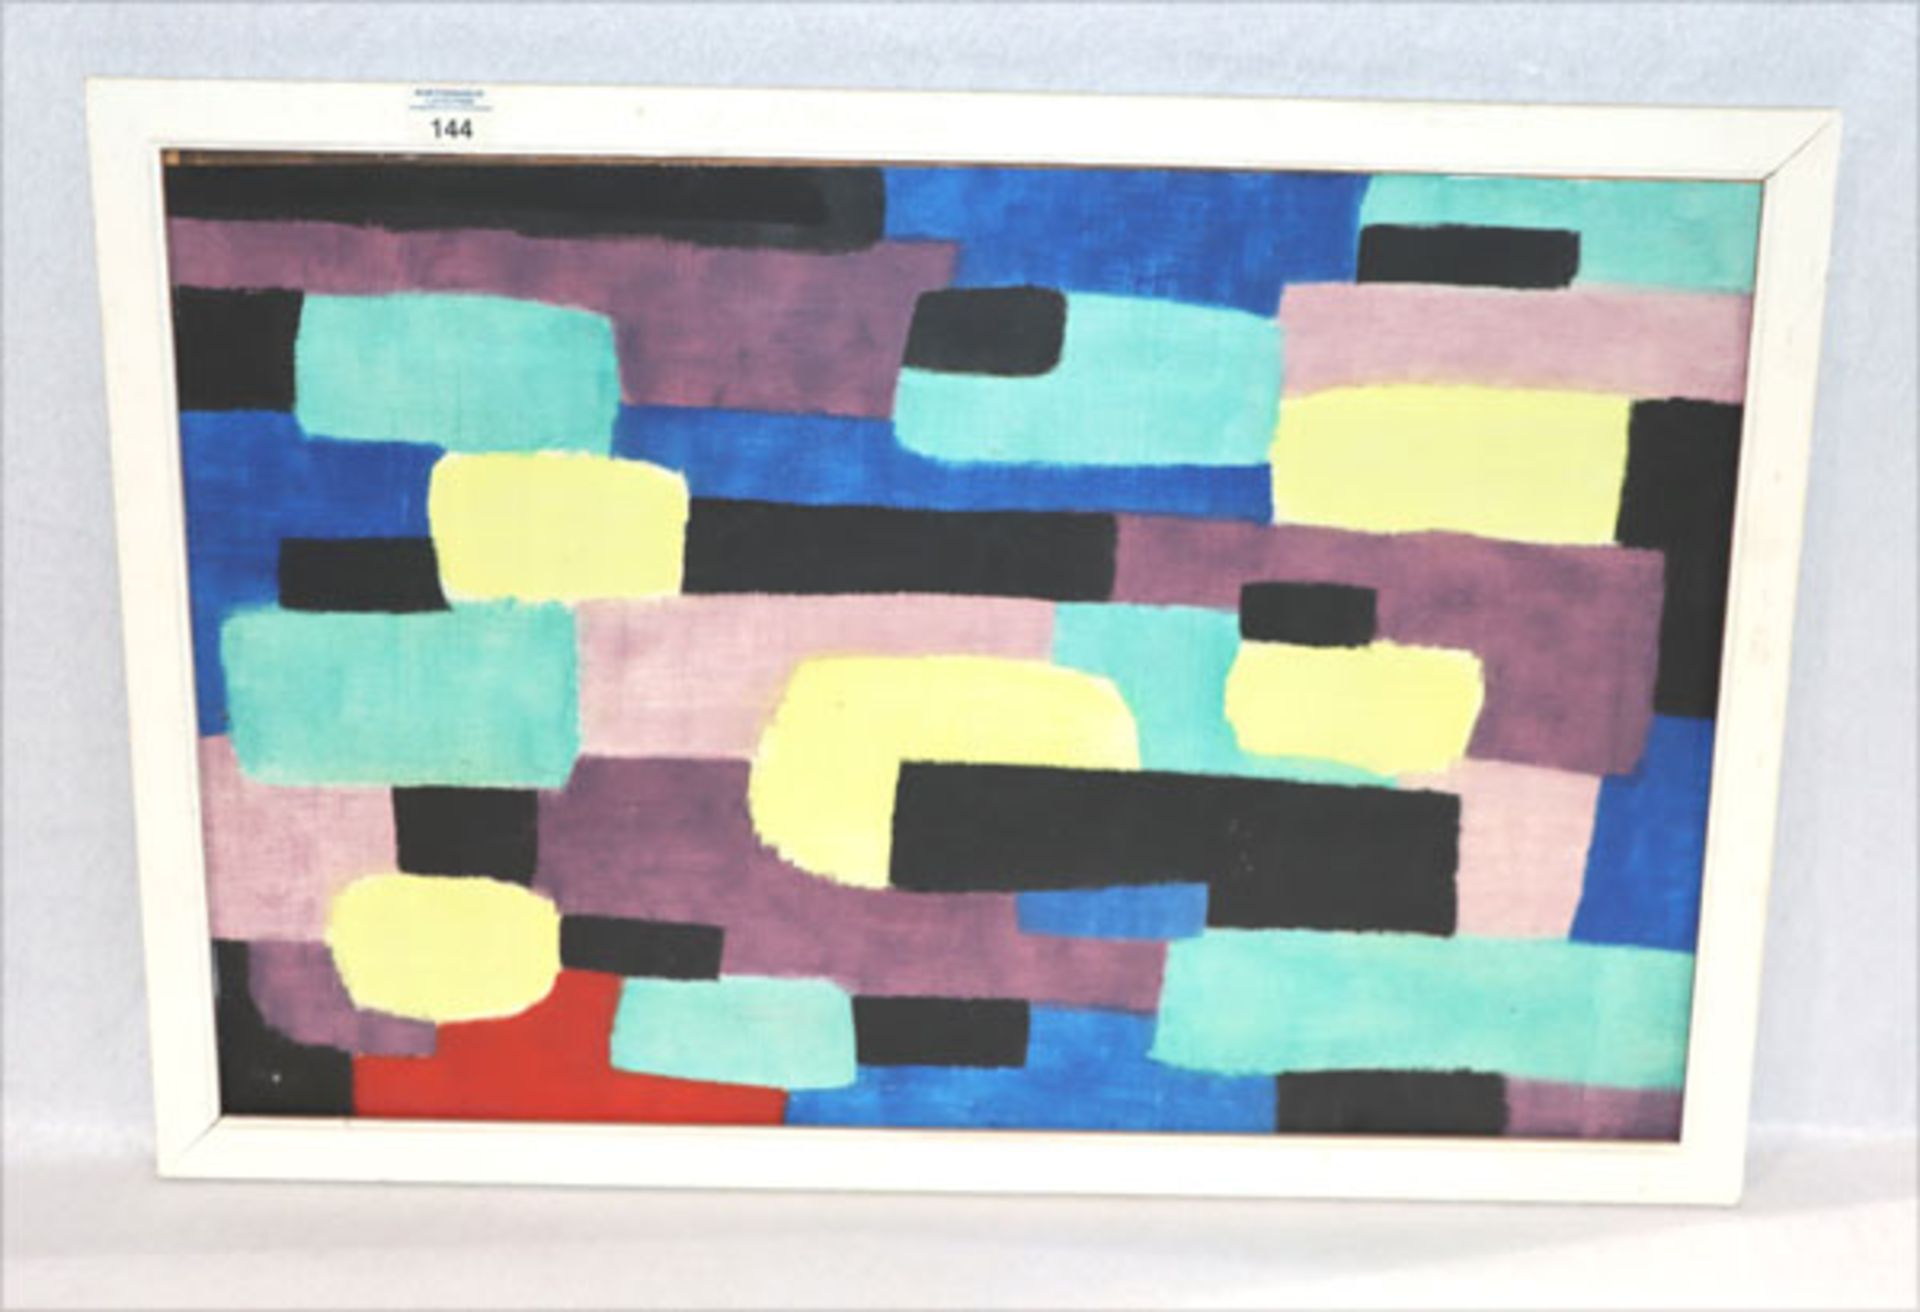 Gemälde ÖL/Malkarton 'Farbenfroh', signiert R. (Rudolf) Härtel, * 1930 München - lebt in Garmisch-